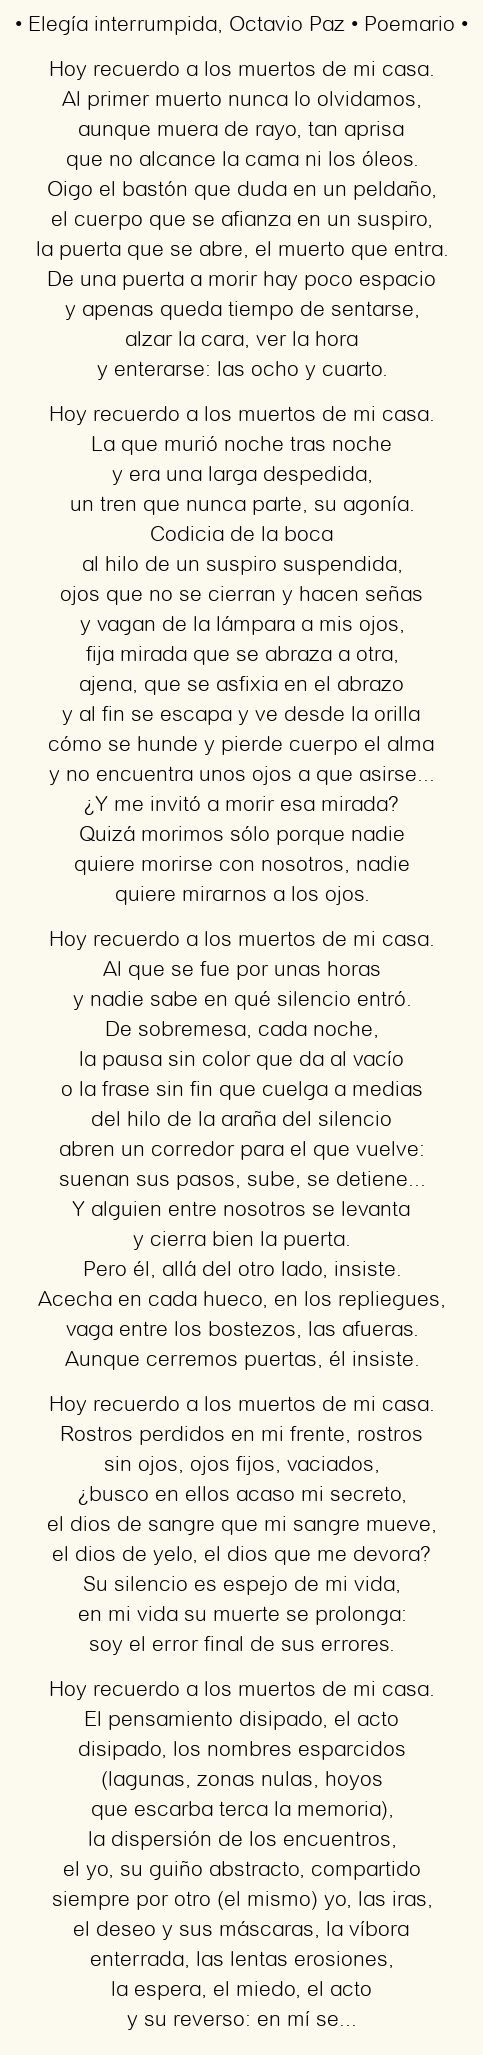 Imagen con el poema Elegía interrumpida, por Octavio Paz